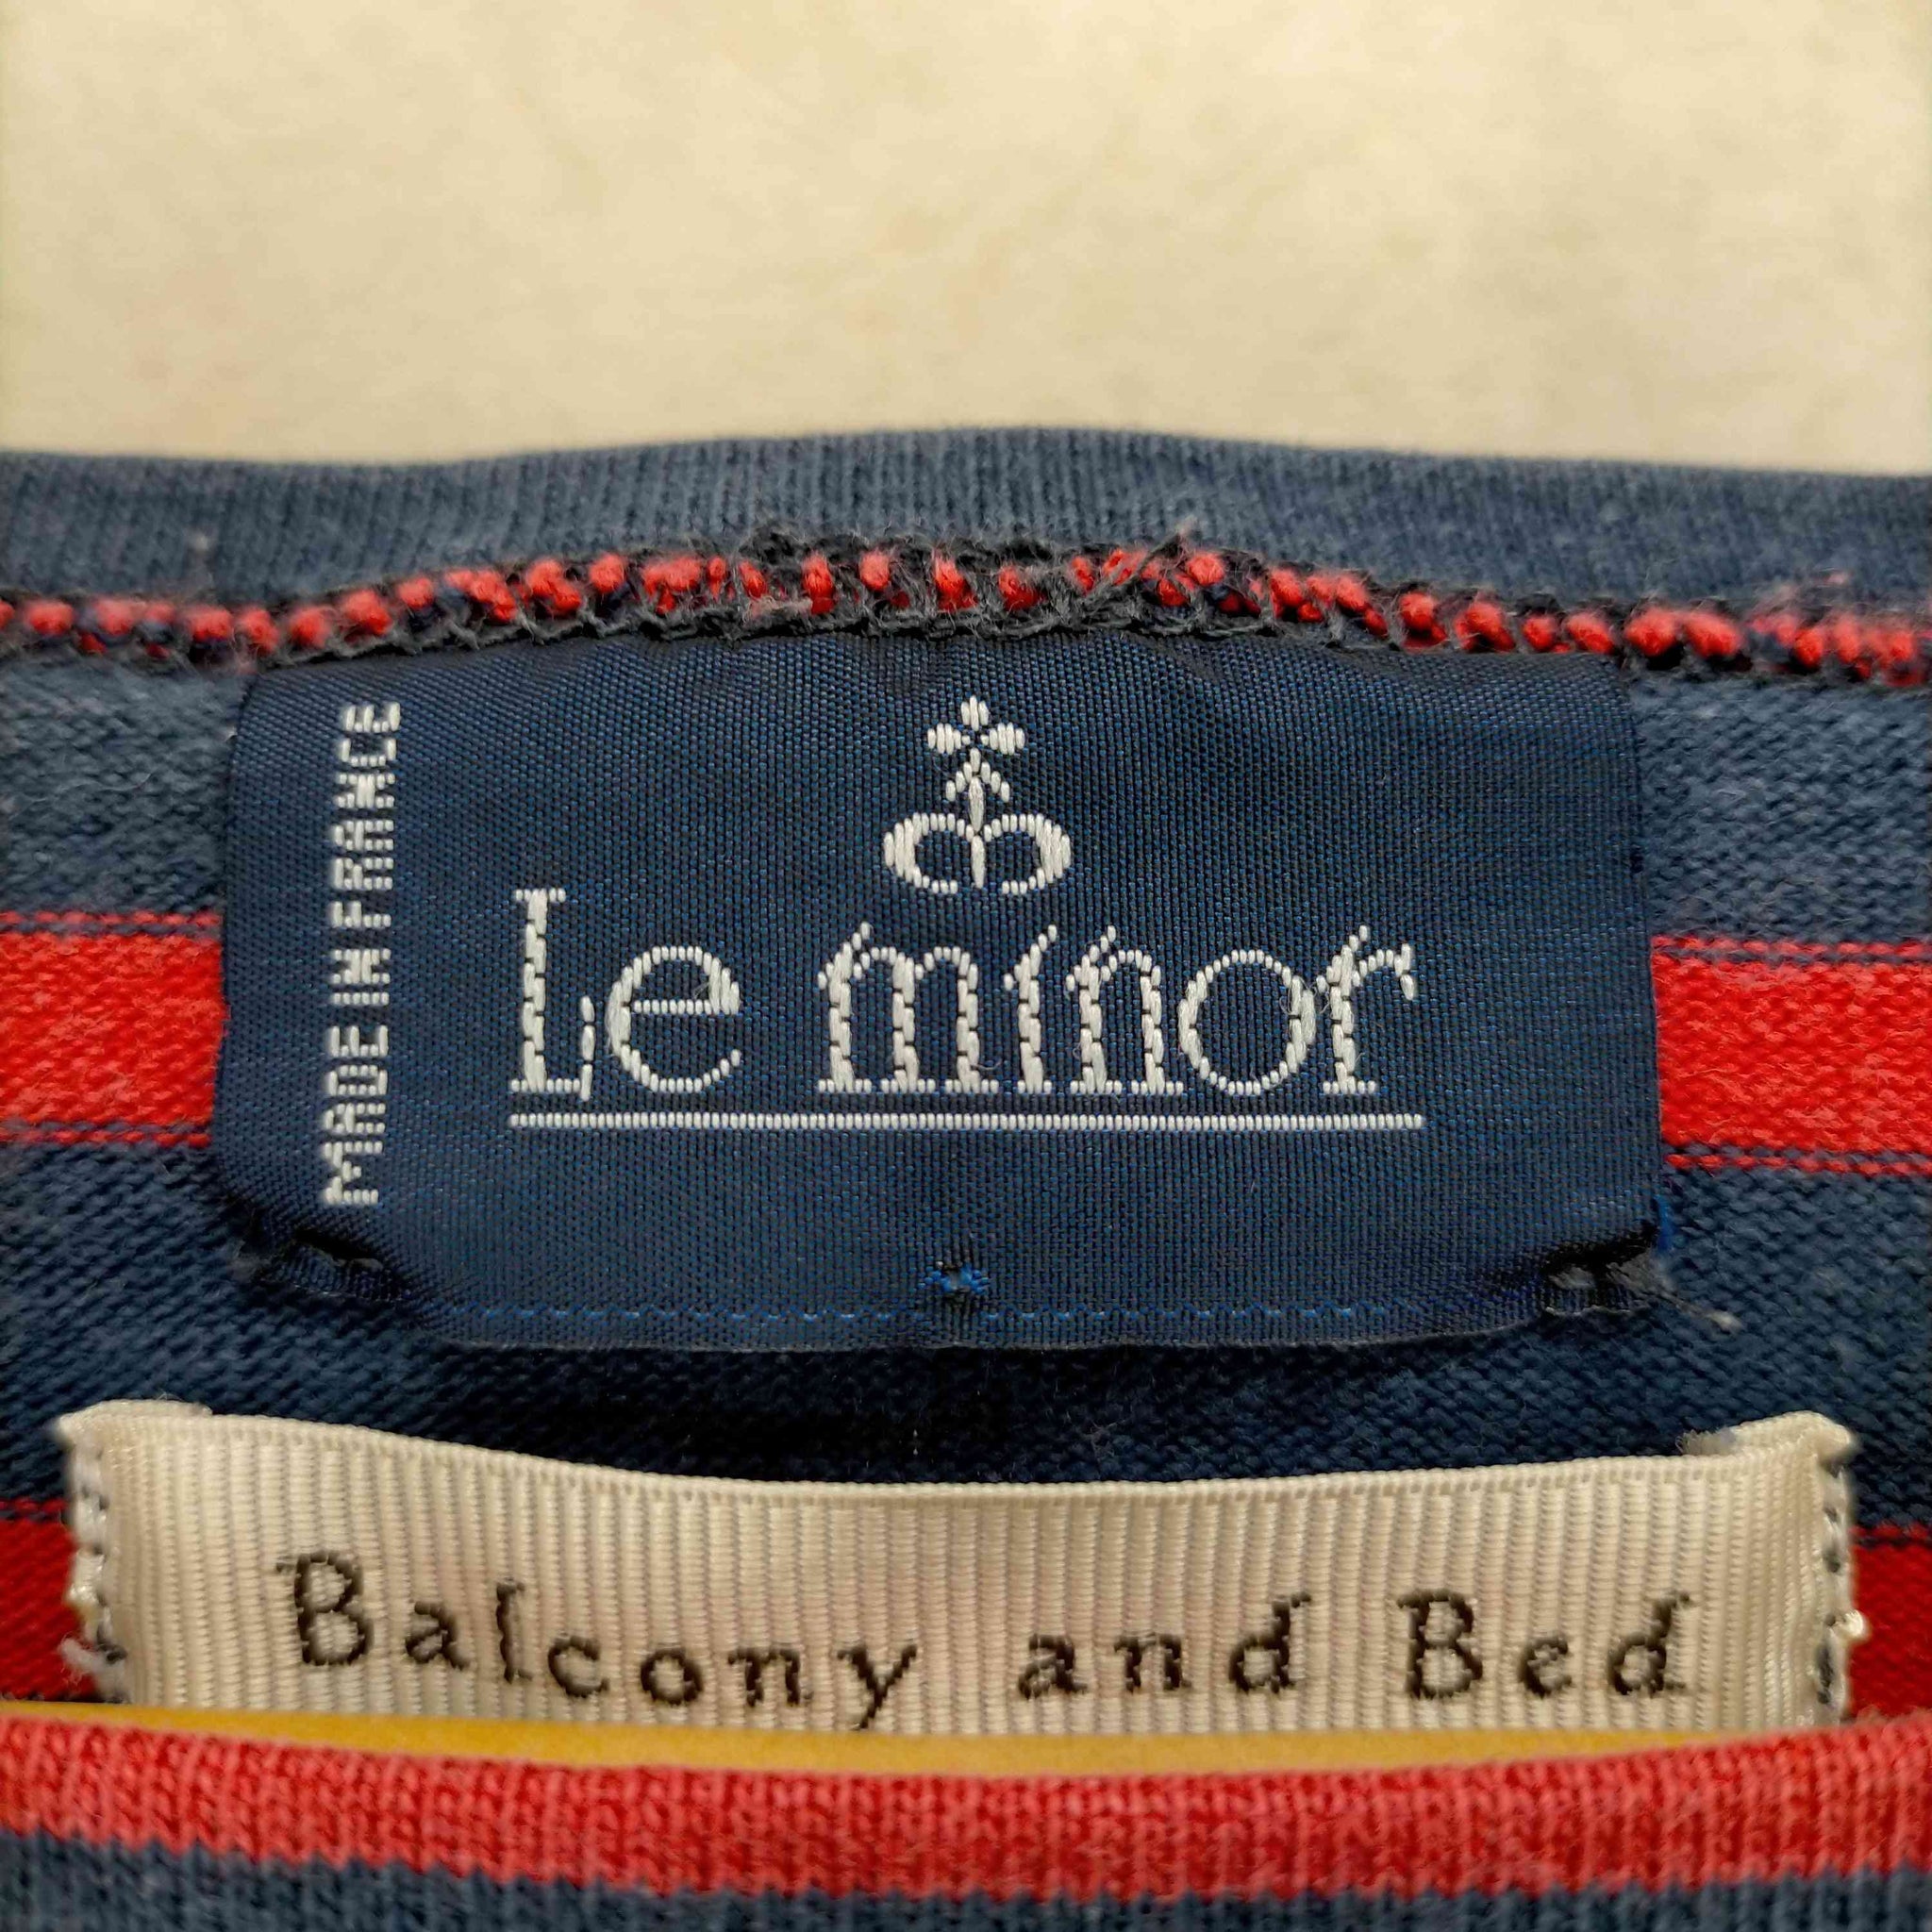 Le minor(ルミノア)バスクシャツ